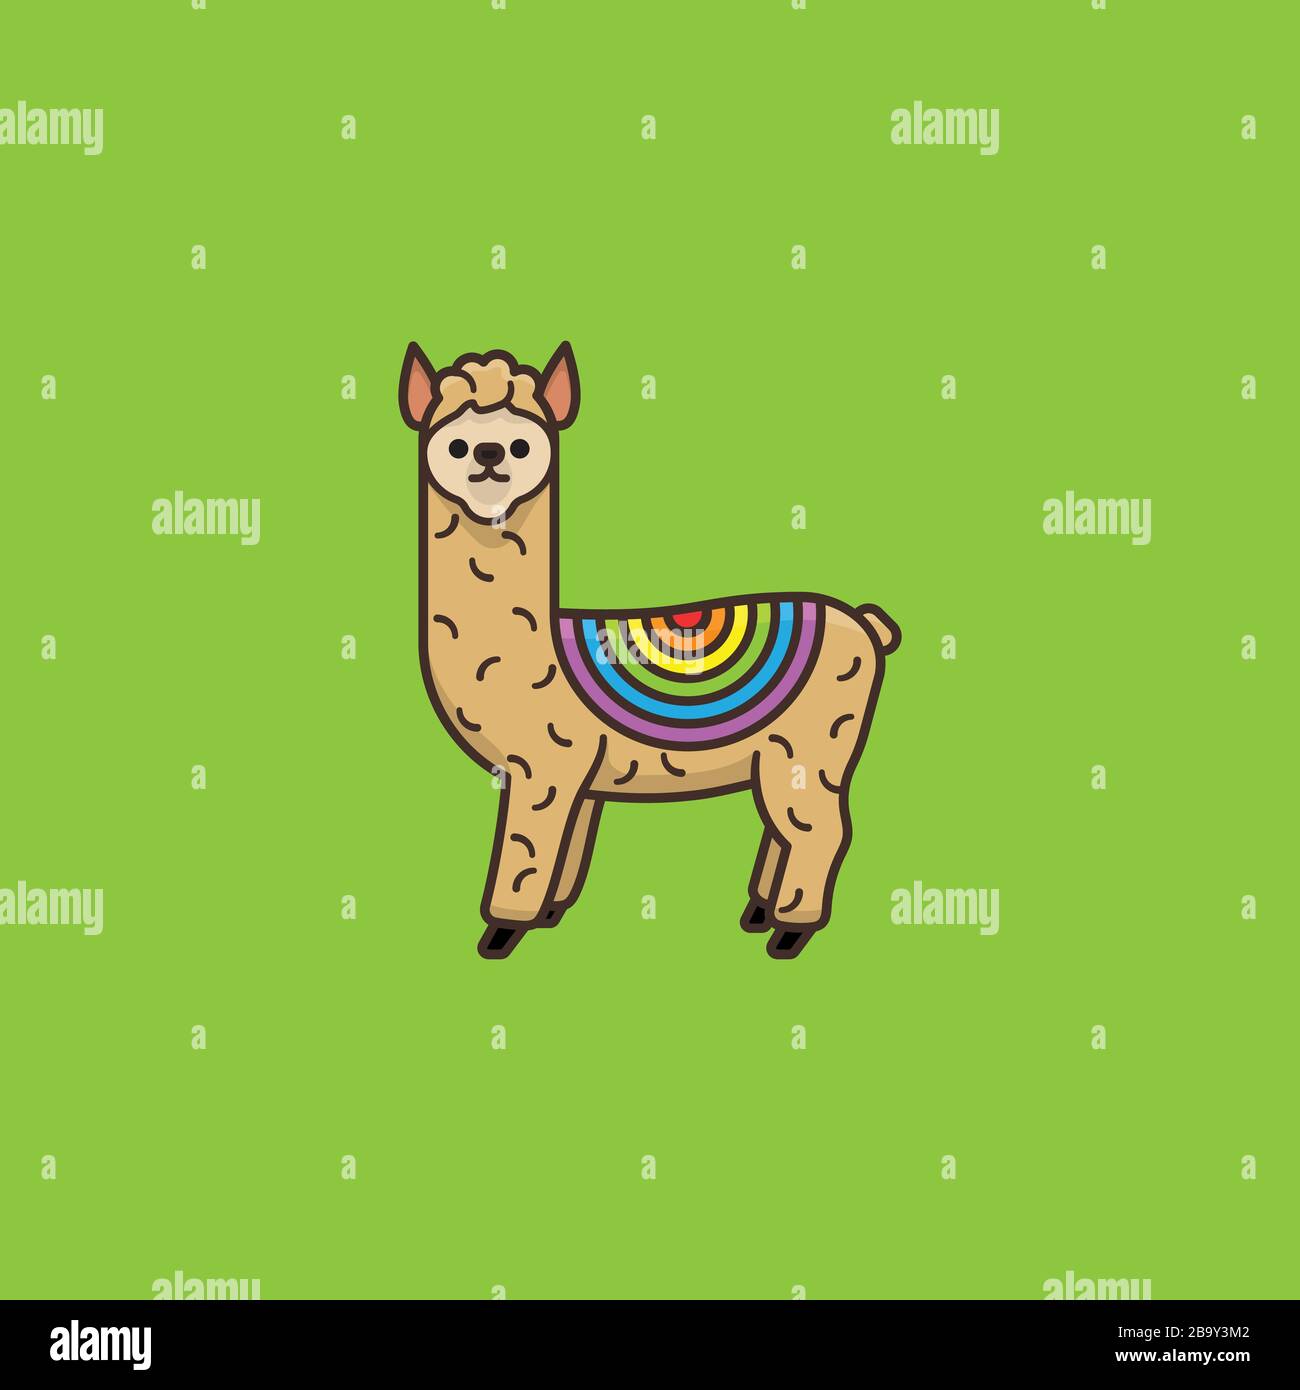 Alpaka mit Regenbogenfarben und Vektorgrafiken für den Rainbow Day am 3. April. Südamerikanisches Camelid-Symbol. Stock Vektor